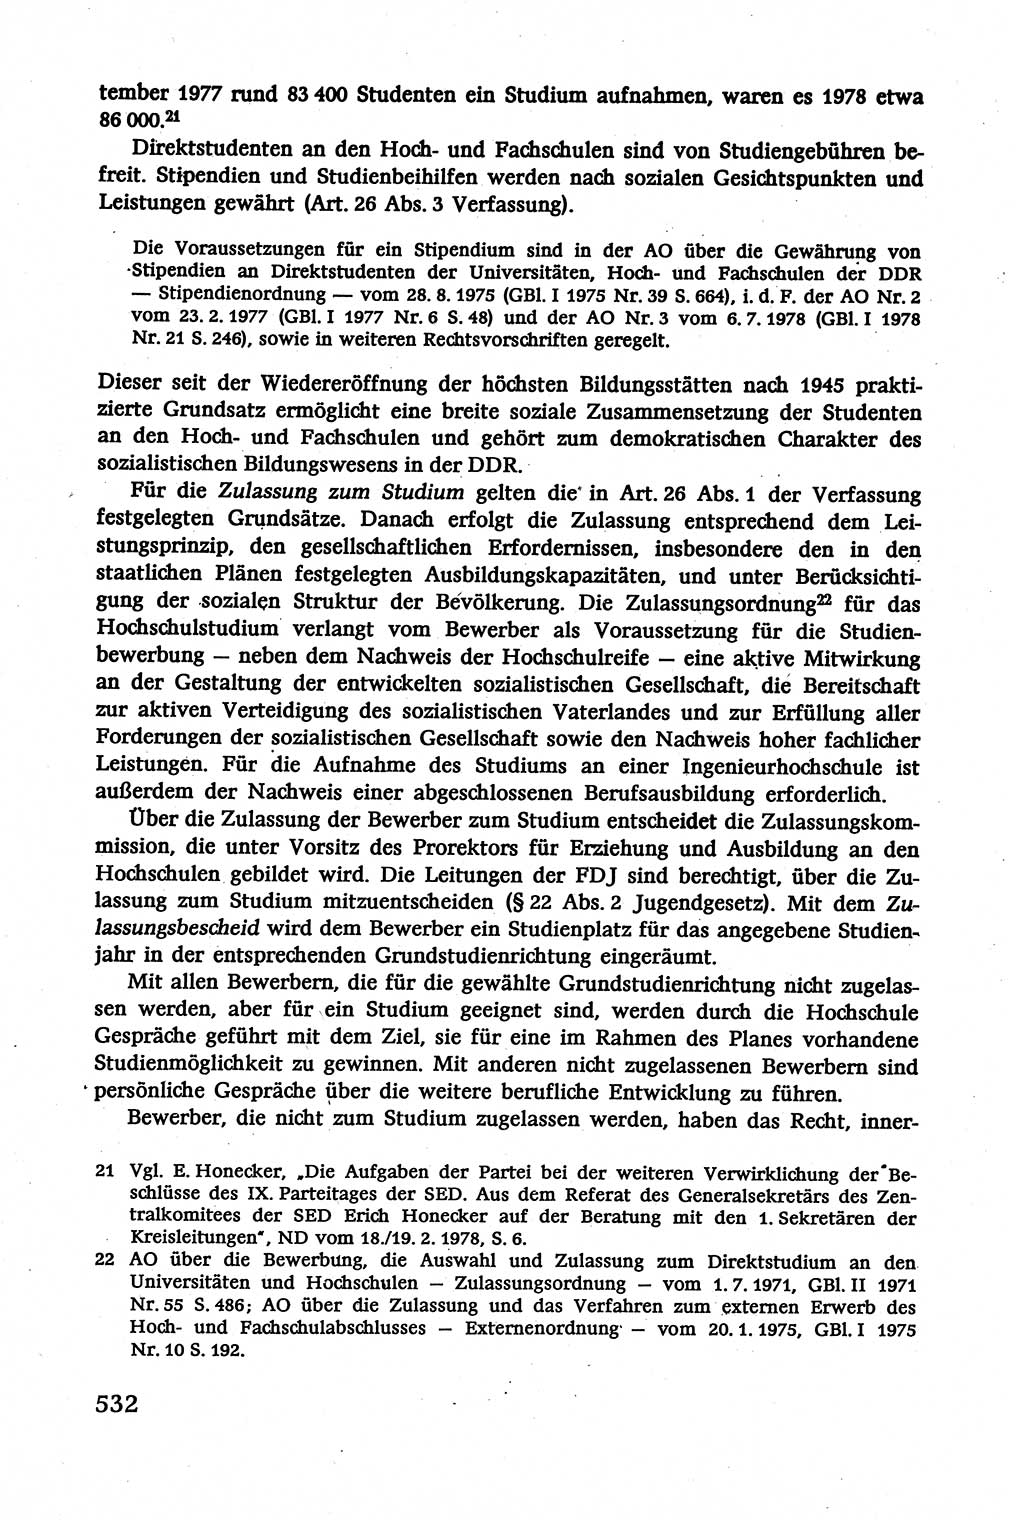 Verwaltungsrecht [Deutsche Demokratische Republik (DDR)], Lehrbuch 1979, Seite 532 (Verw.-R. DDR Lb. 1979, S. 532)